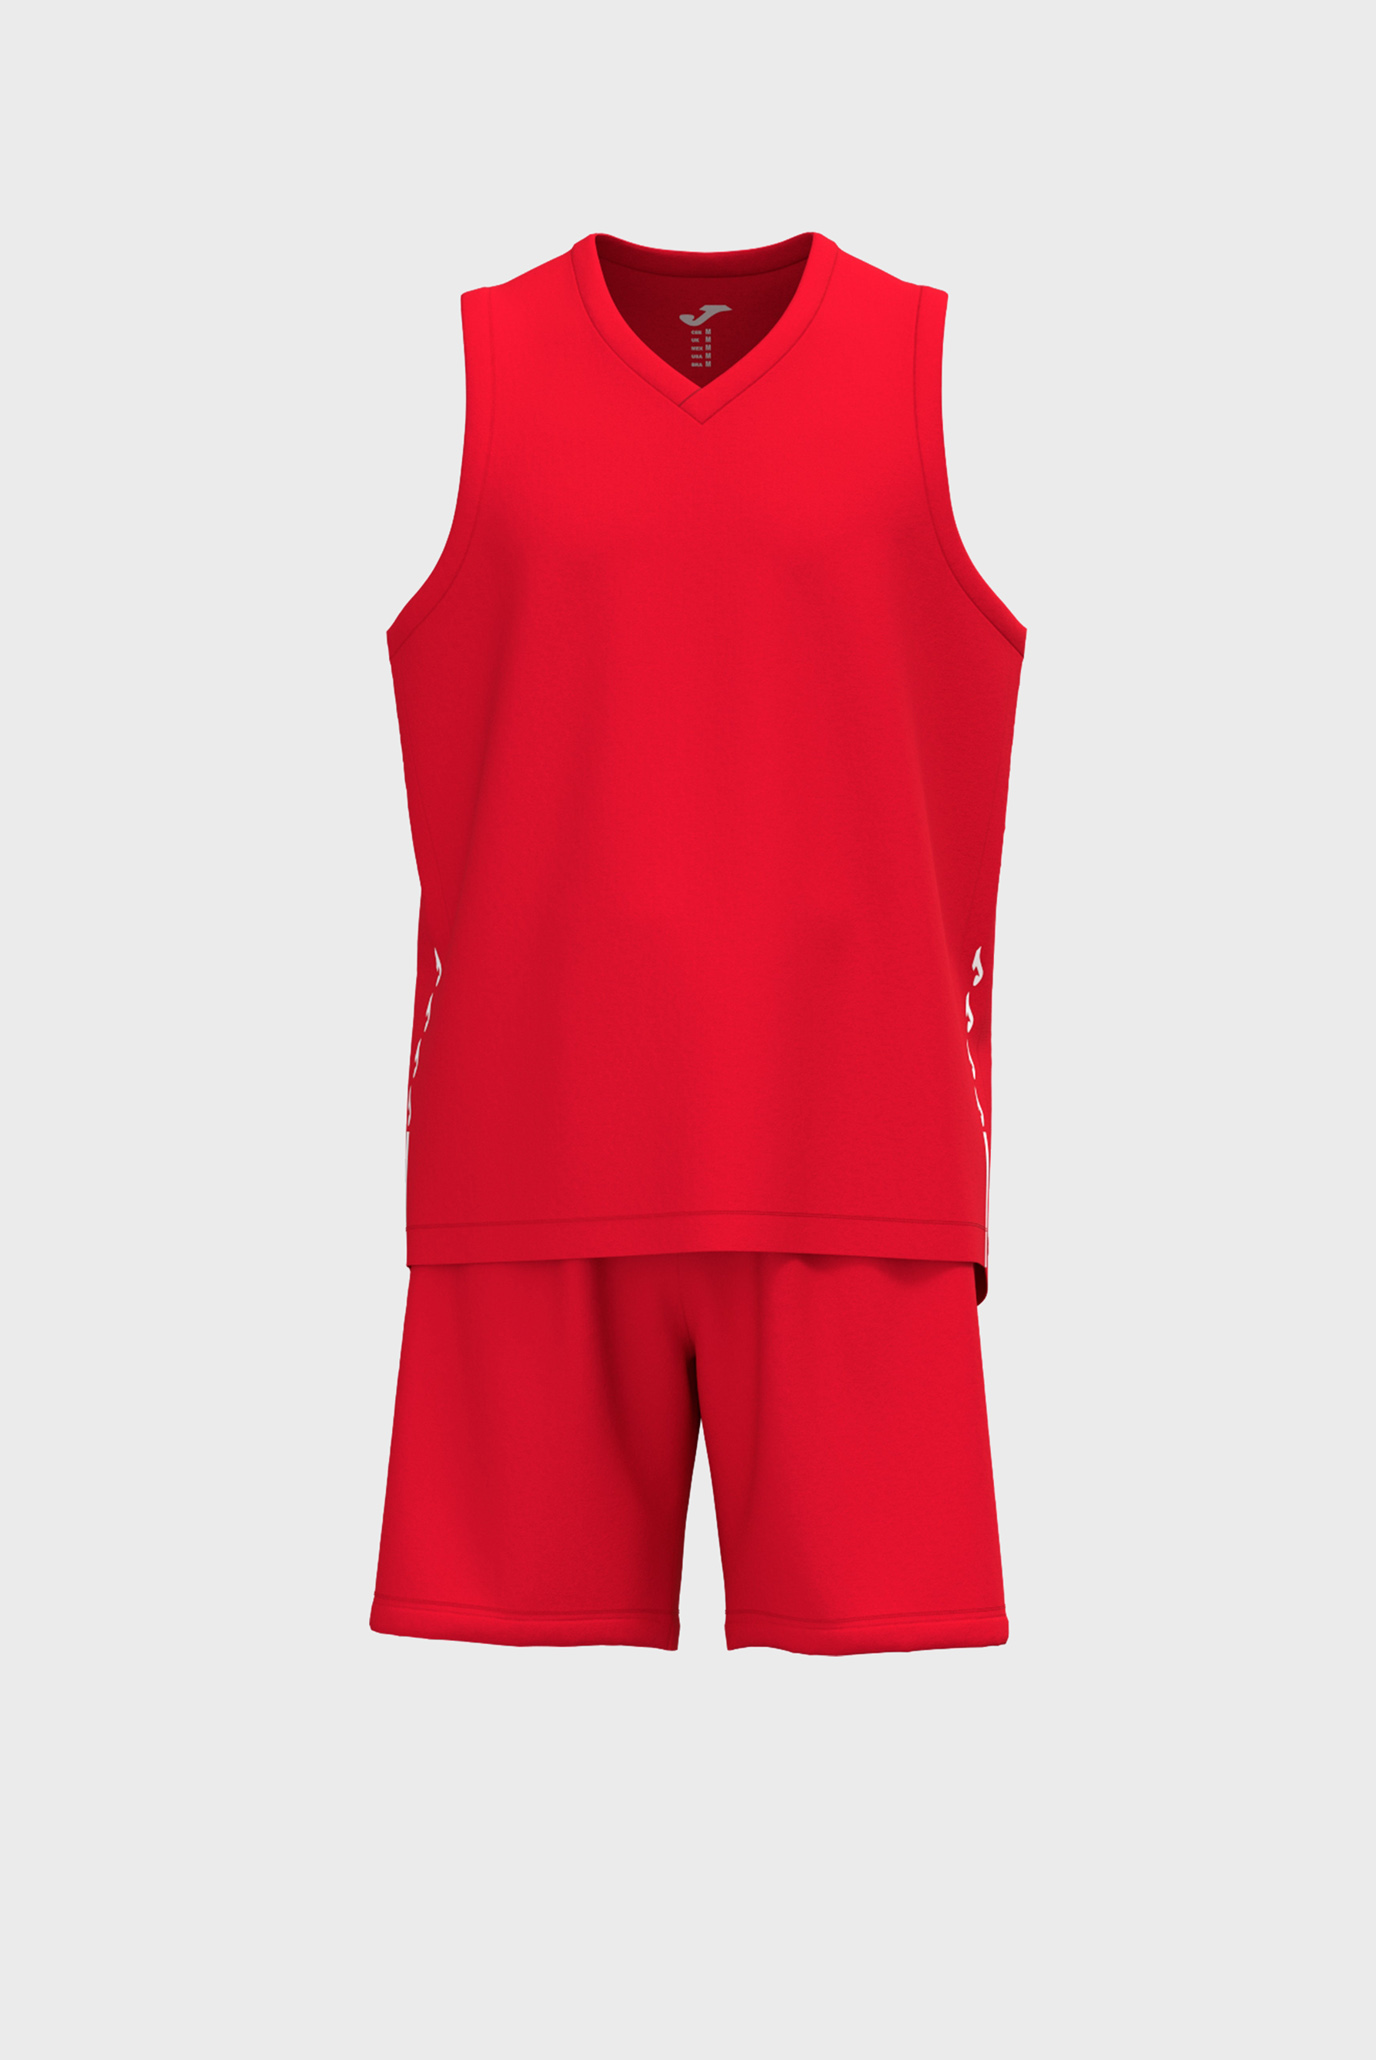 Дитячий червоний спортивний костюм (майка, шорти) 1